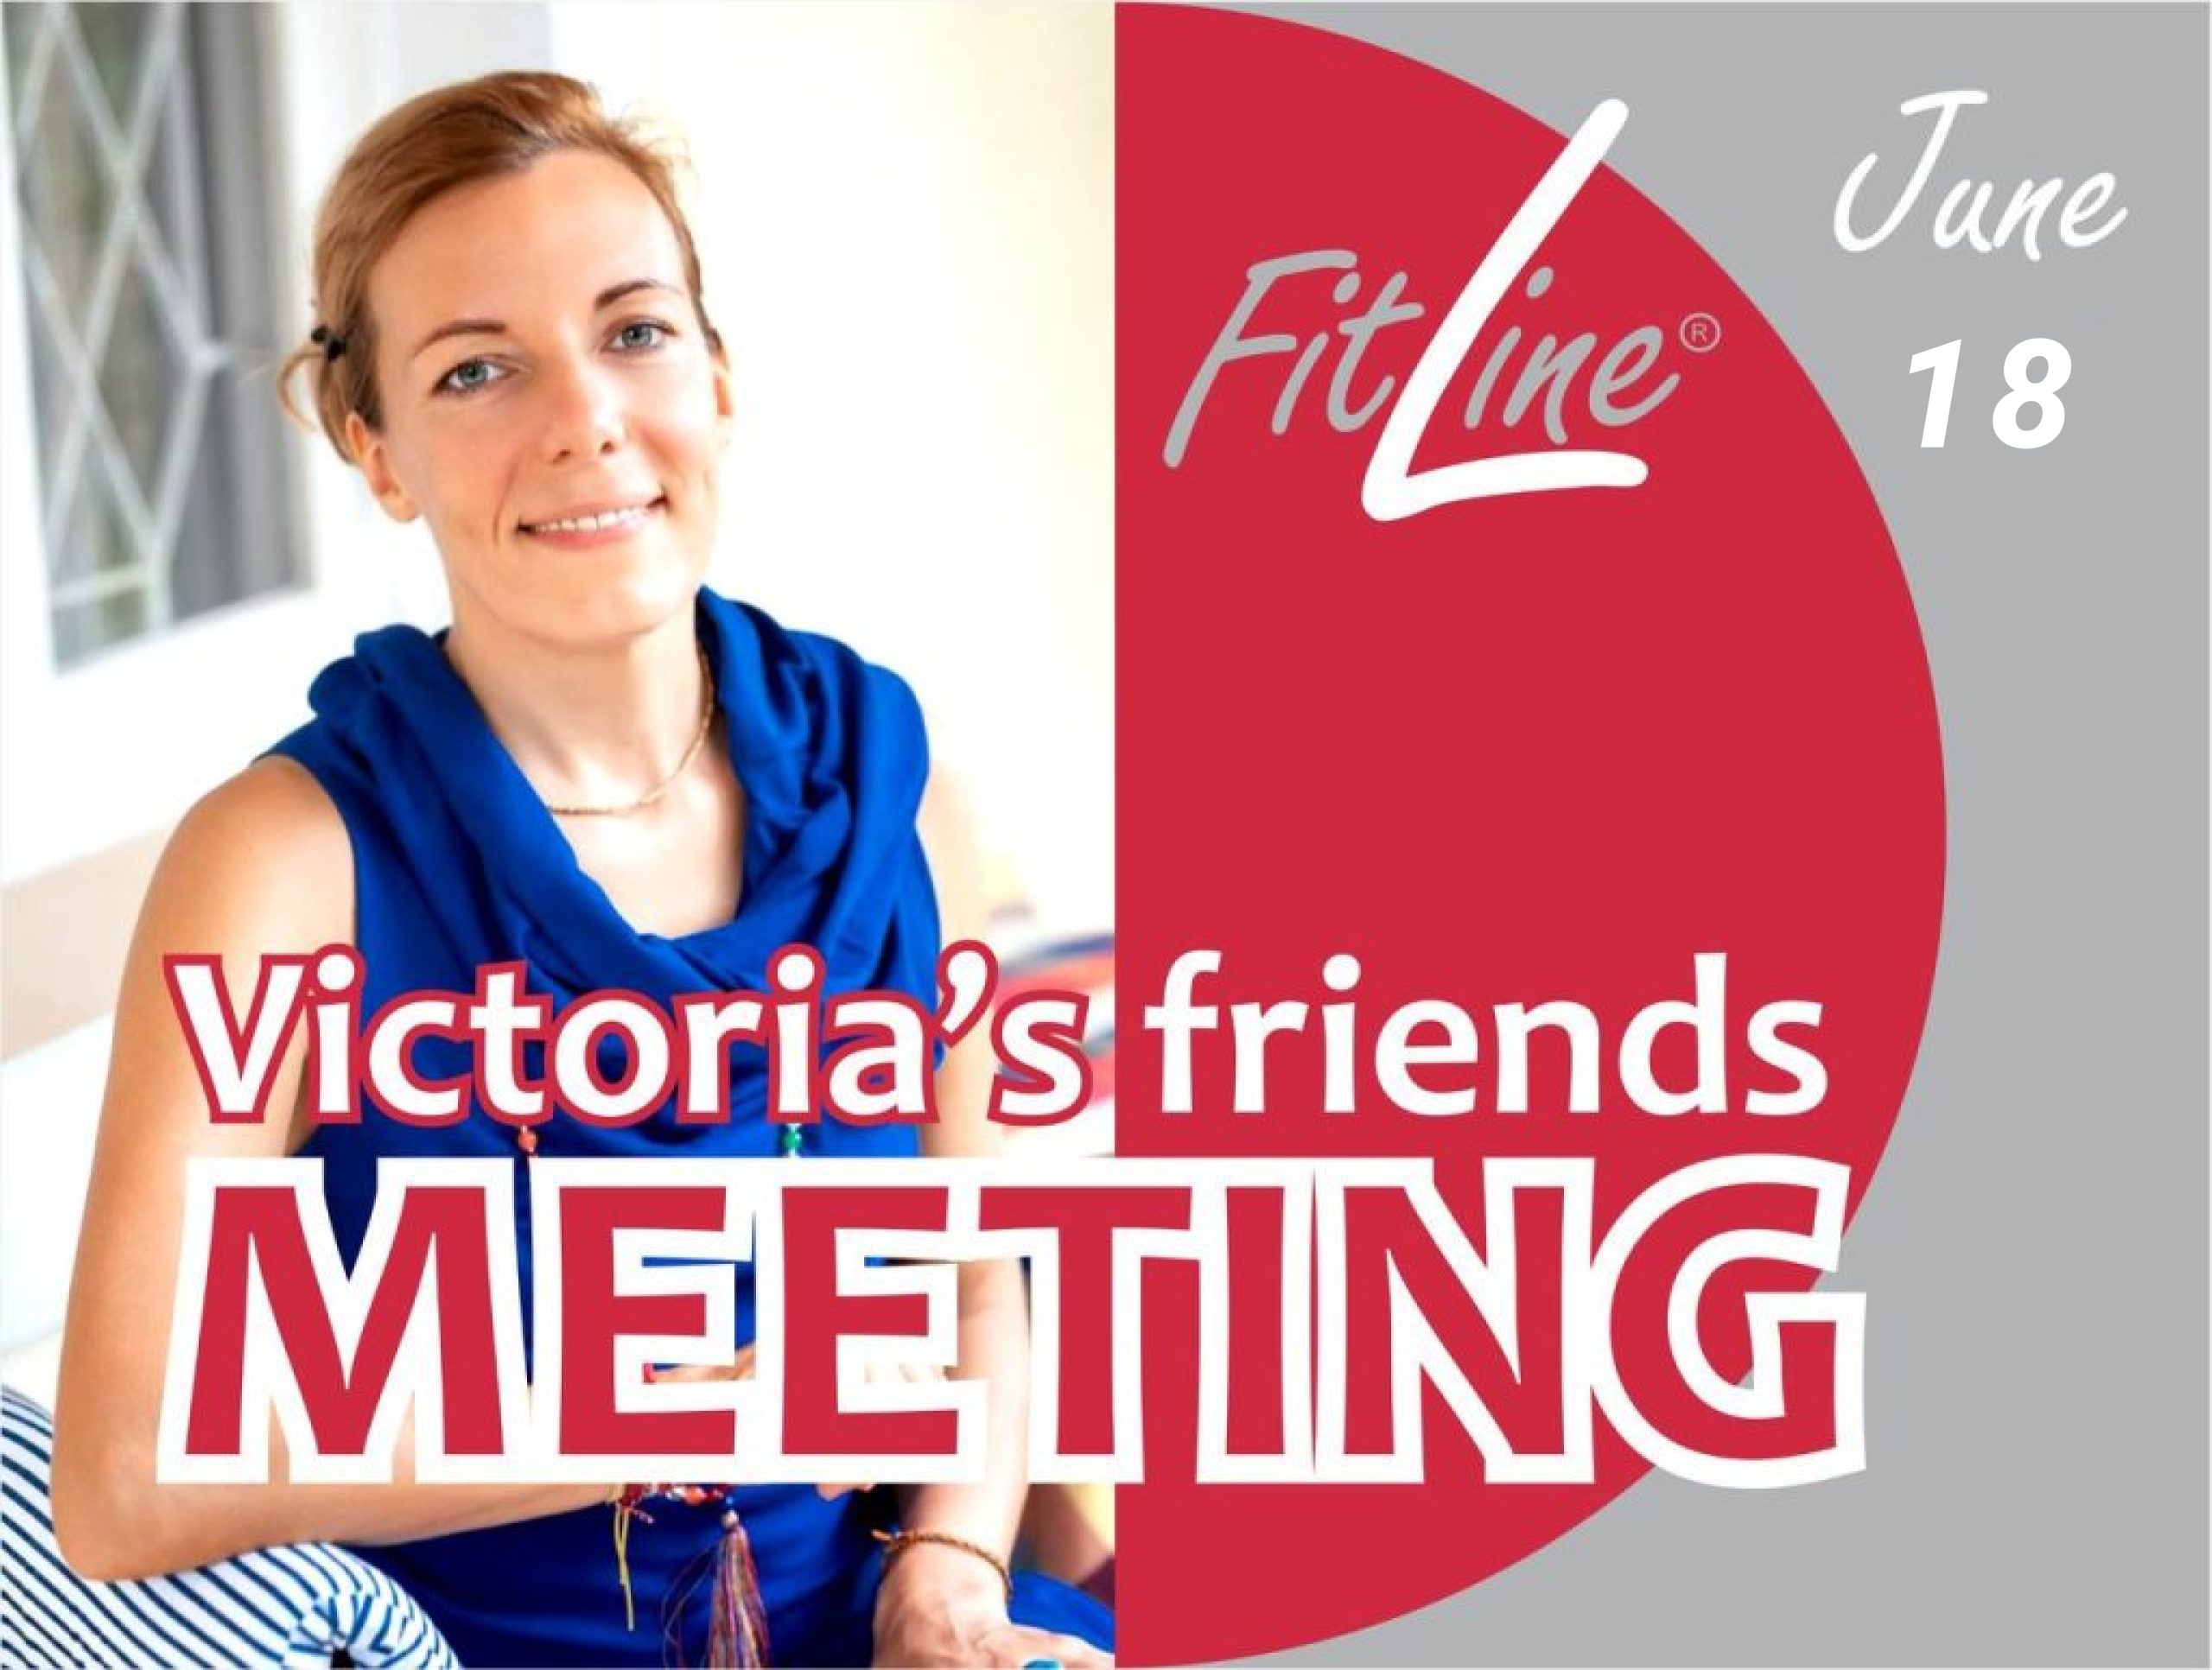 Встреча друзей на Activize party с Викторией Тодоровой в Дублине